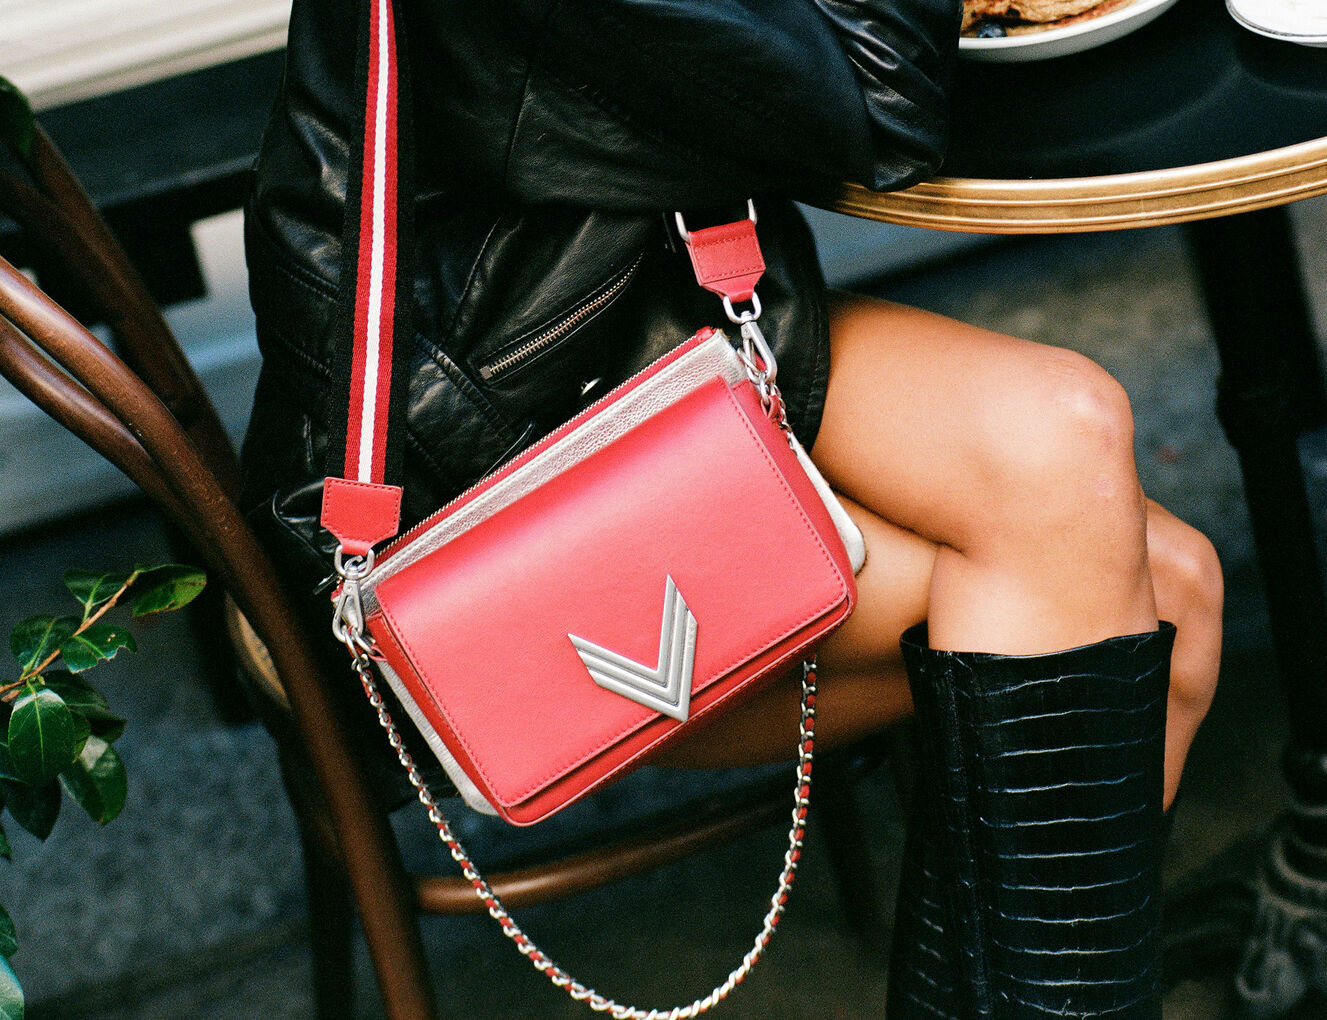 Las mejores ofertas en Zapatos rojos de mujer Louis Vuitton